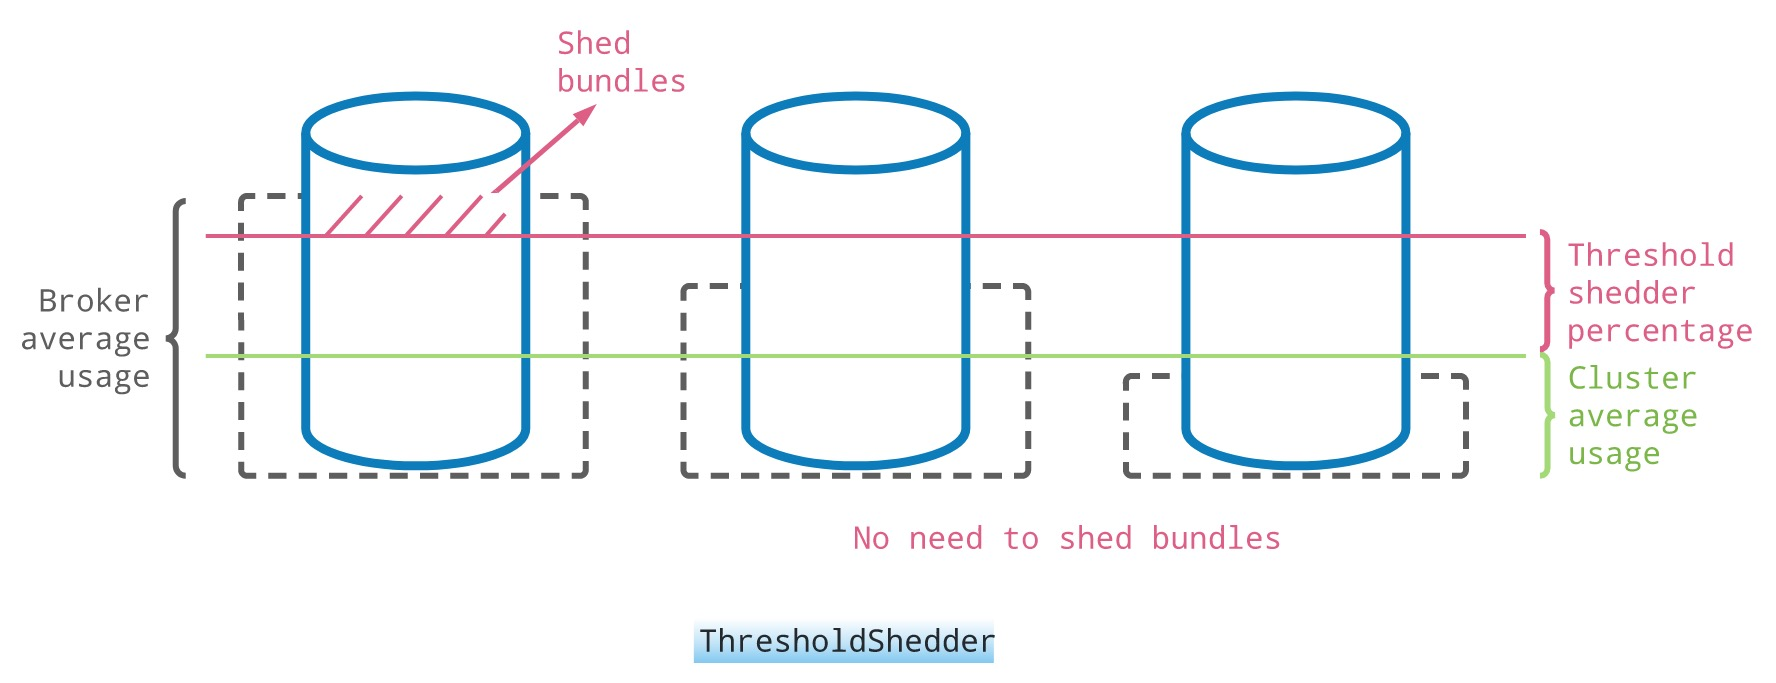 ThresholdShedder